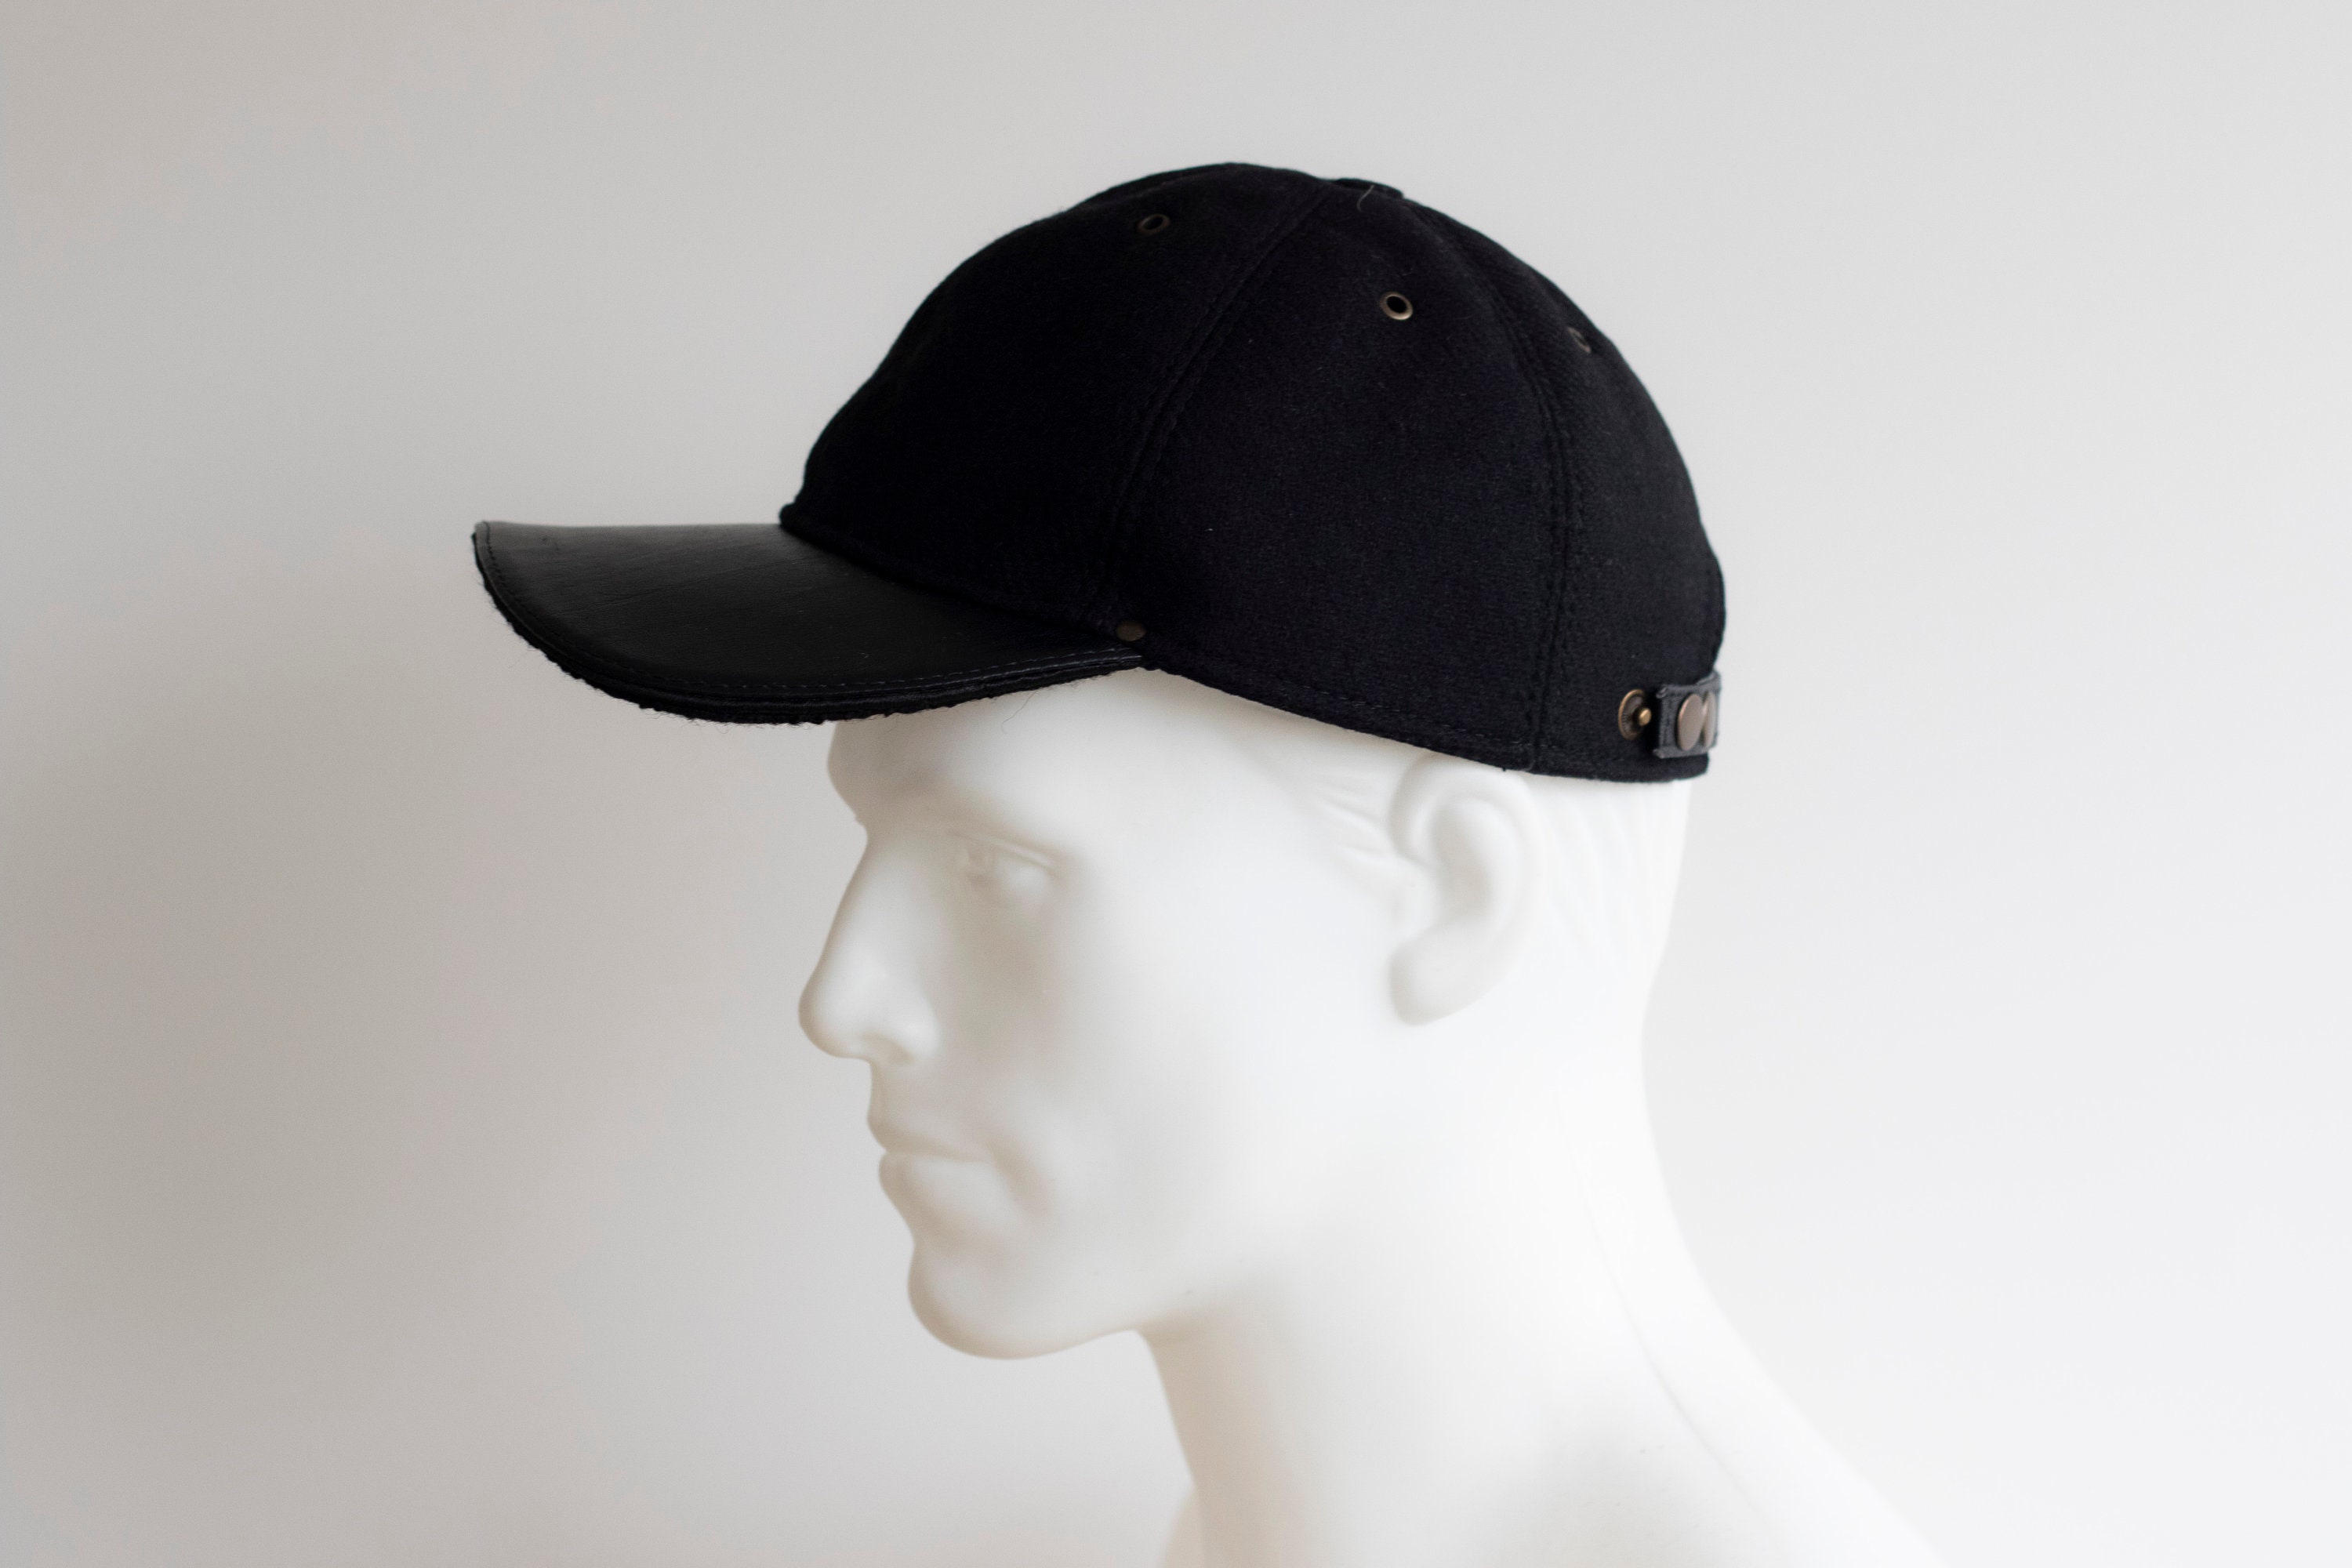 Hat Woolen Cap Etsy Hat Grey Cap Black Cap - Classic Baseball Black Hat Warm Trucker Adjustable Cap Semi